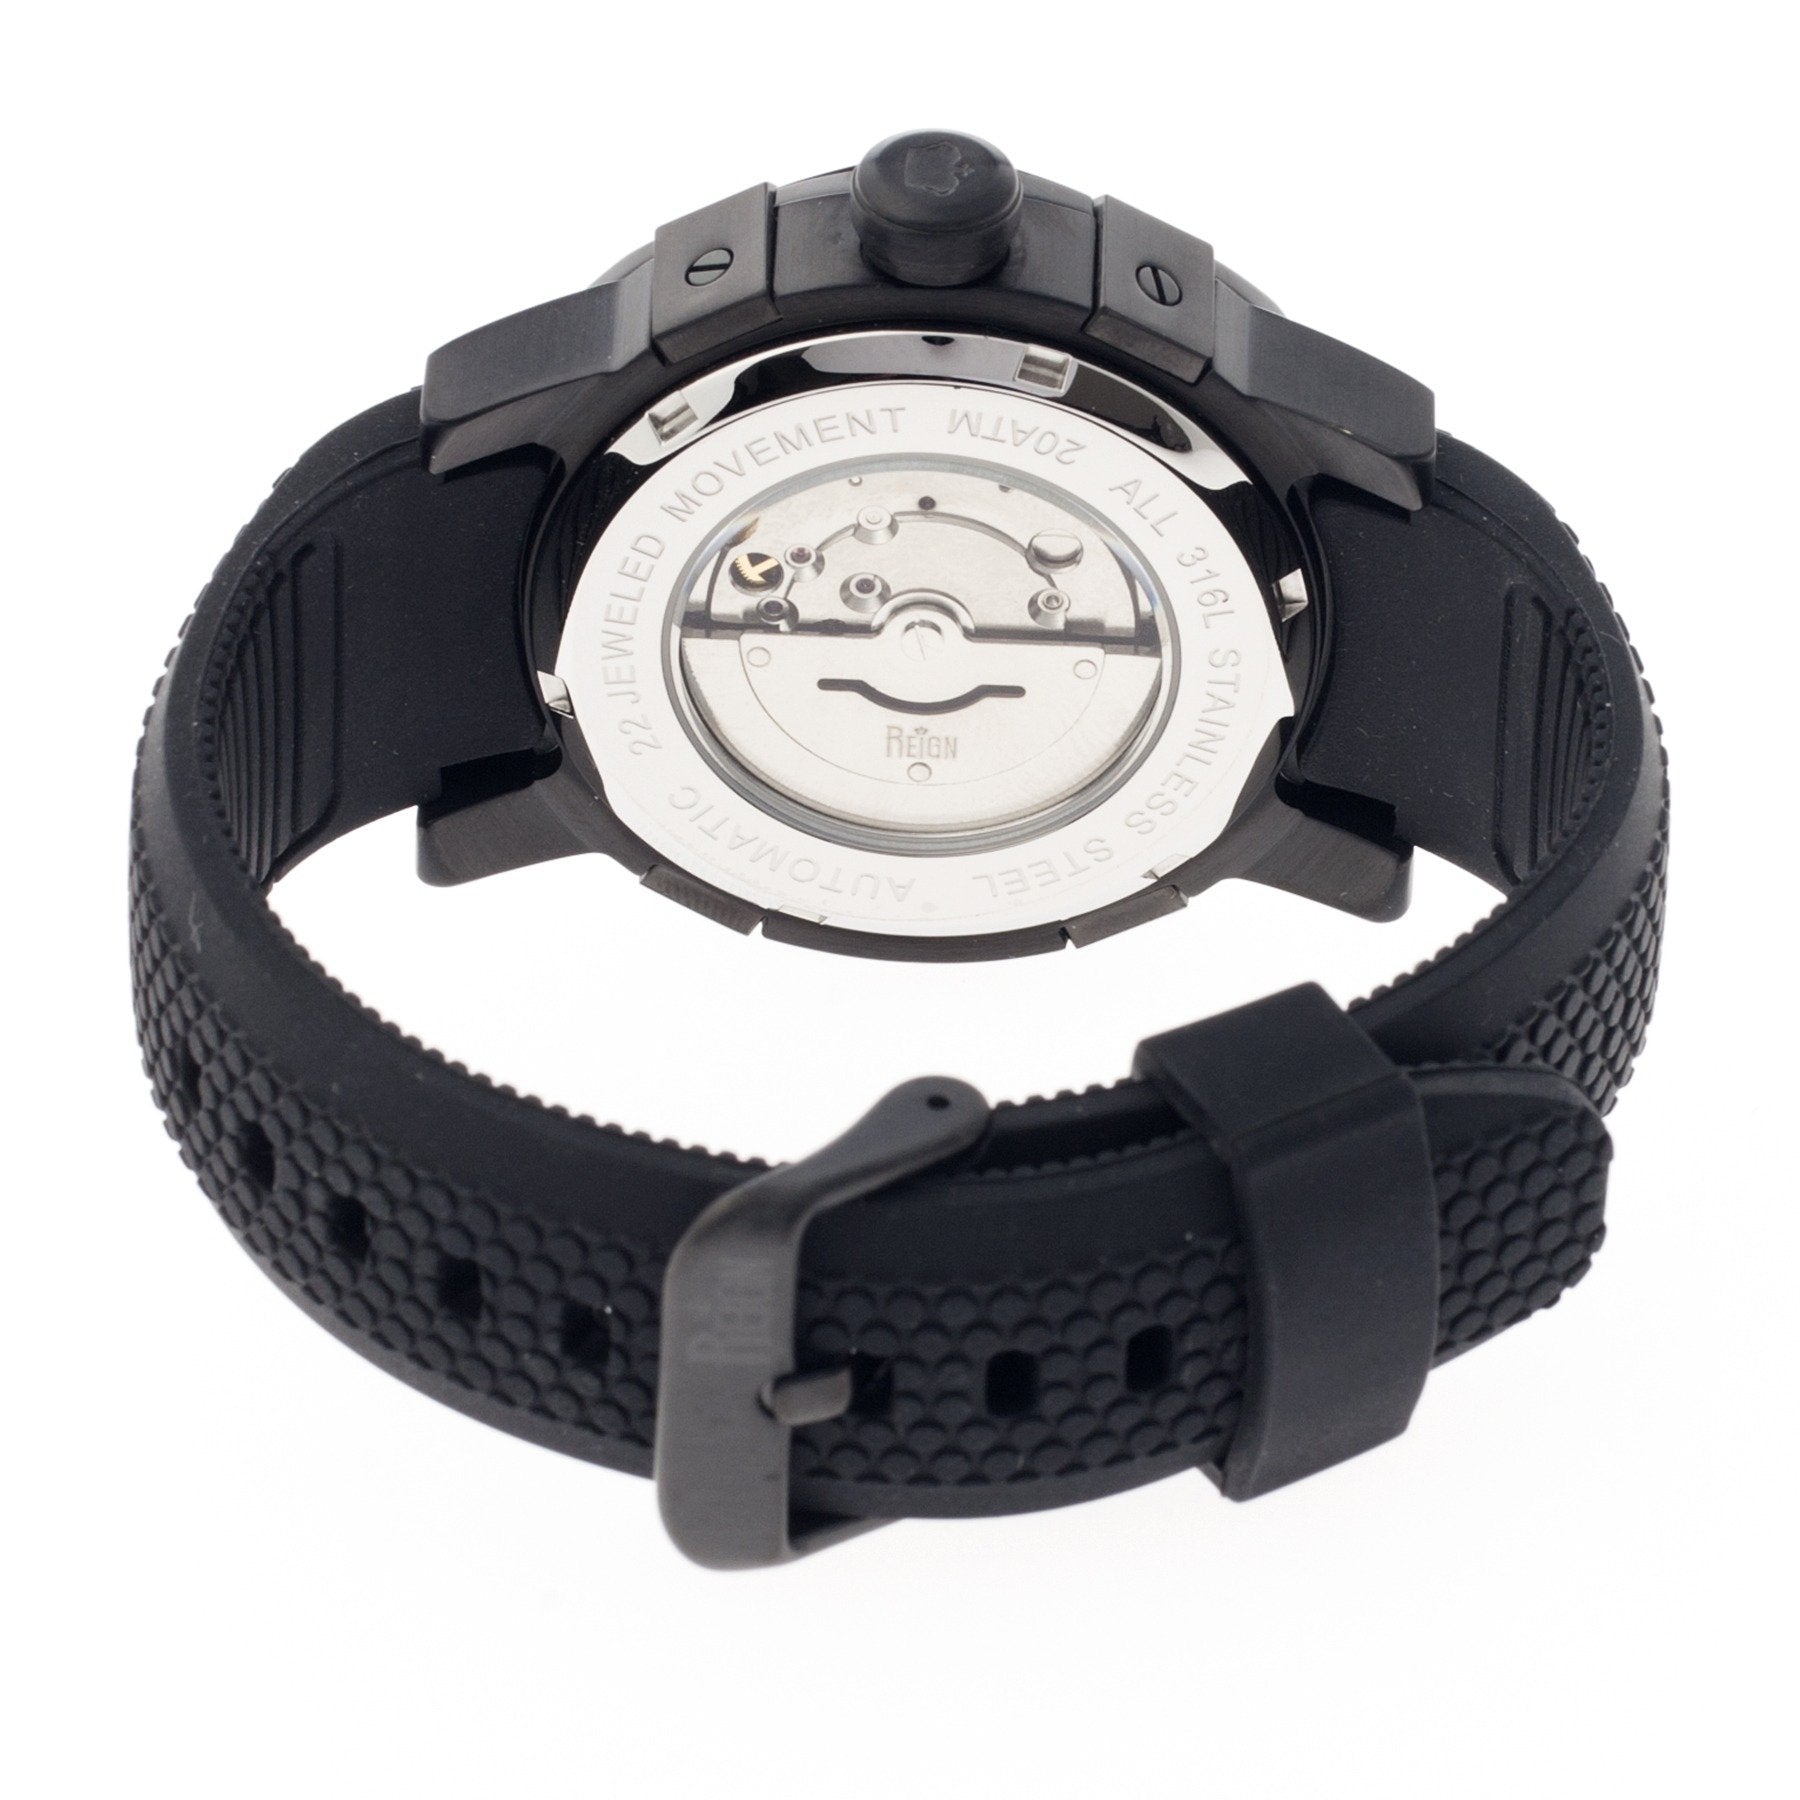 Reign Tudor Automatic Pro-Diver Watch w/Date - Black - REIRN1206